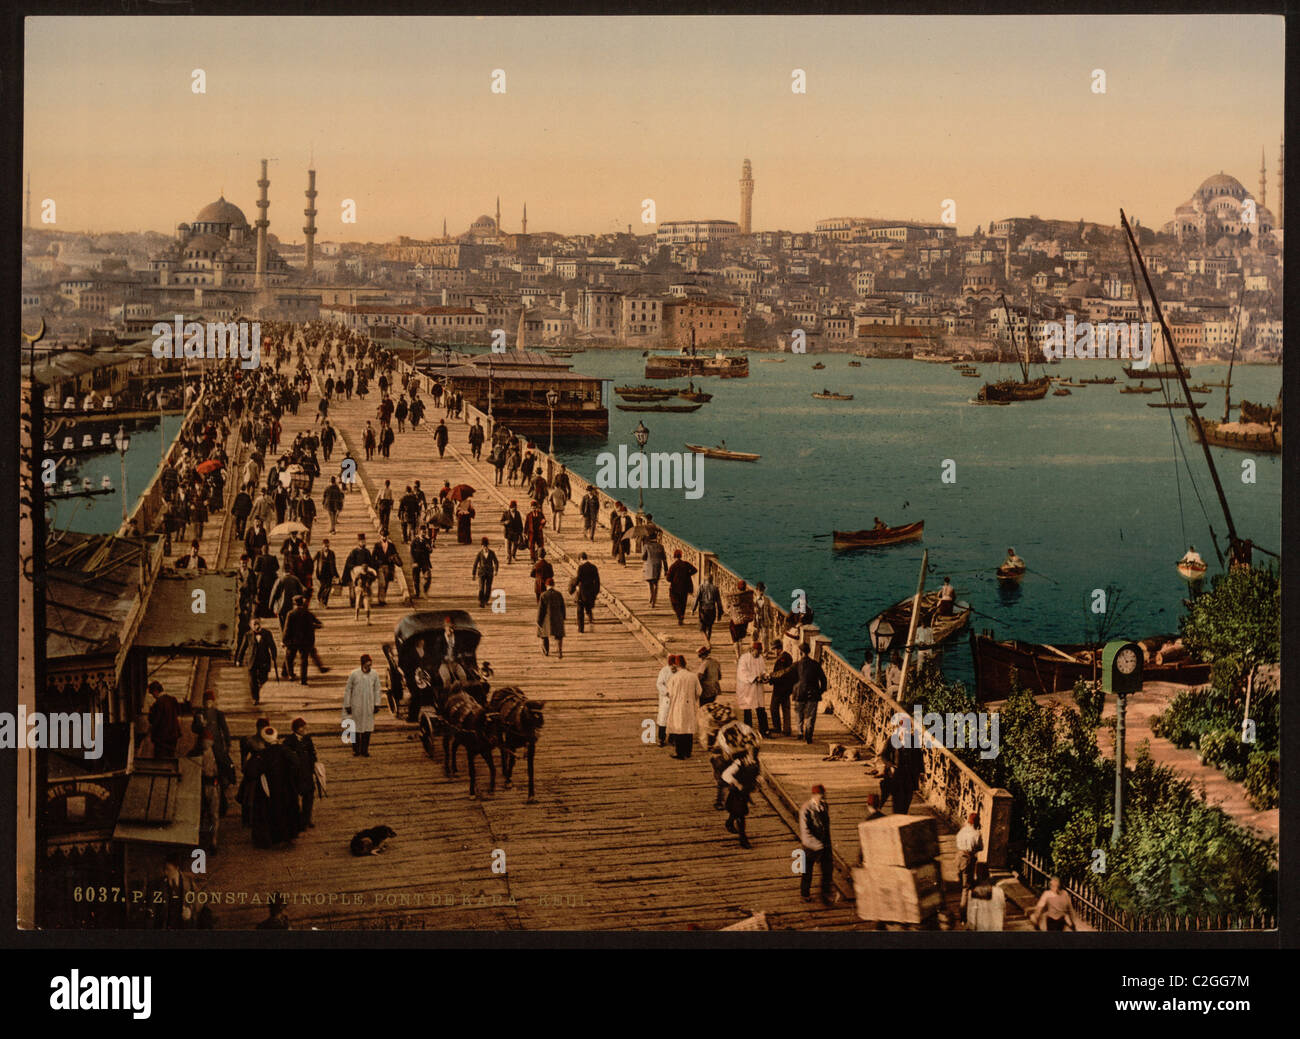 Kara-Keui (Galata) bridge, Constantinople, Turkey Stock Photo